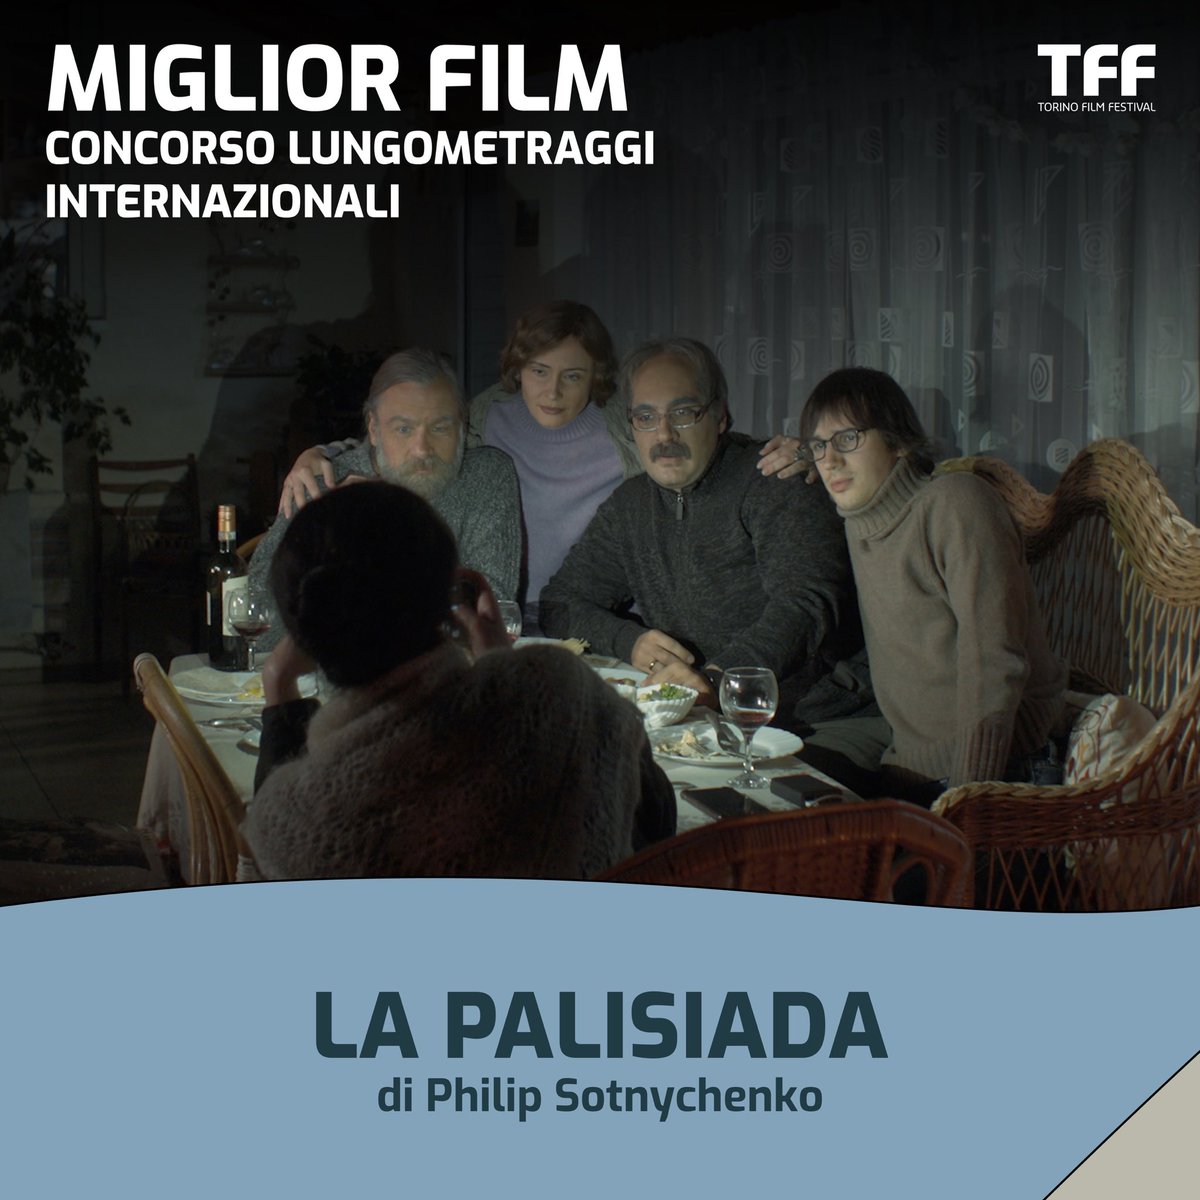 Il Miglior Film della 41ª edizione del Torino Film Festival è LA PALISIADA di Philip Sotnychenko. “Film complesso, di grande libertà registica nella costruzione delle scene che, concatenandosi, trovano il loro senso autonomo.”